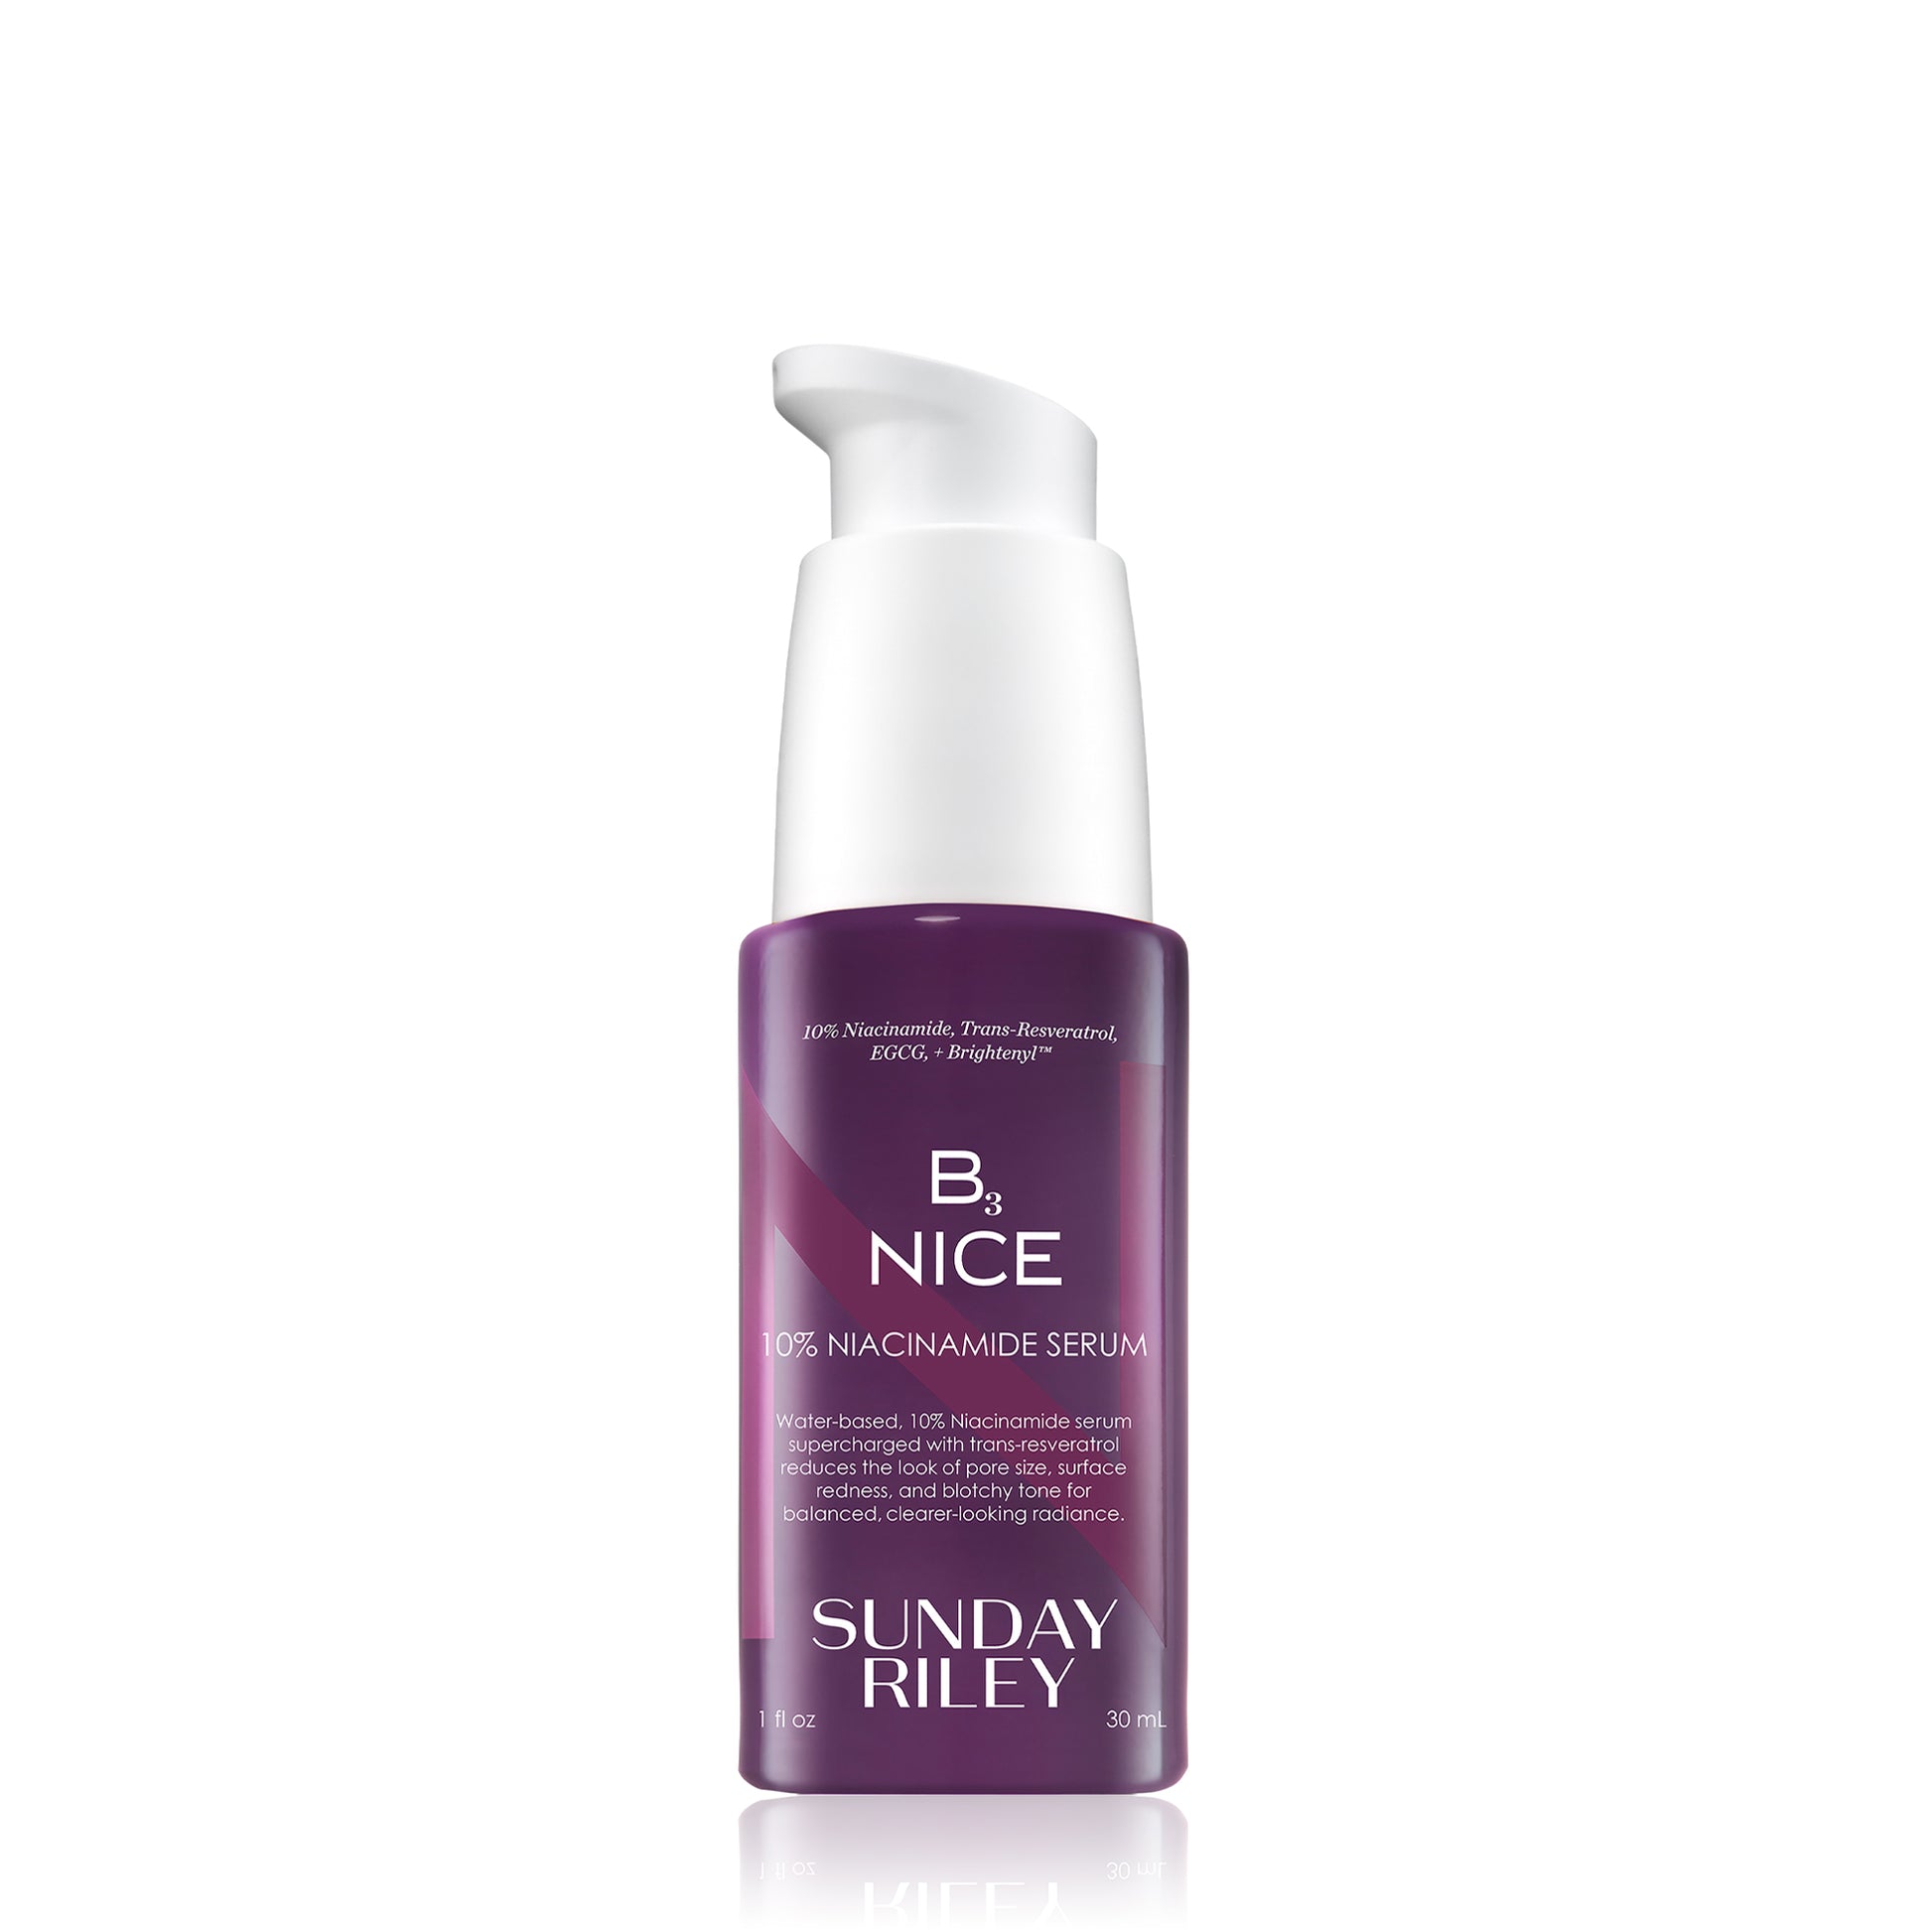 B3 Nice 10% Niacinamide Serum – Sunday Riley